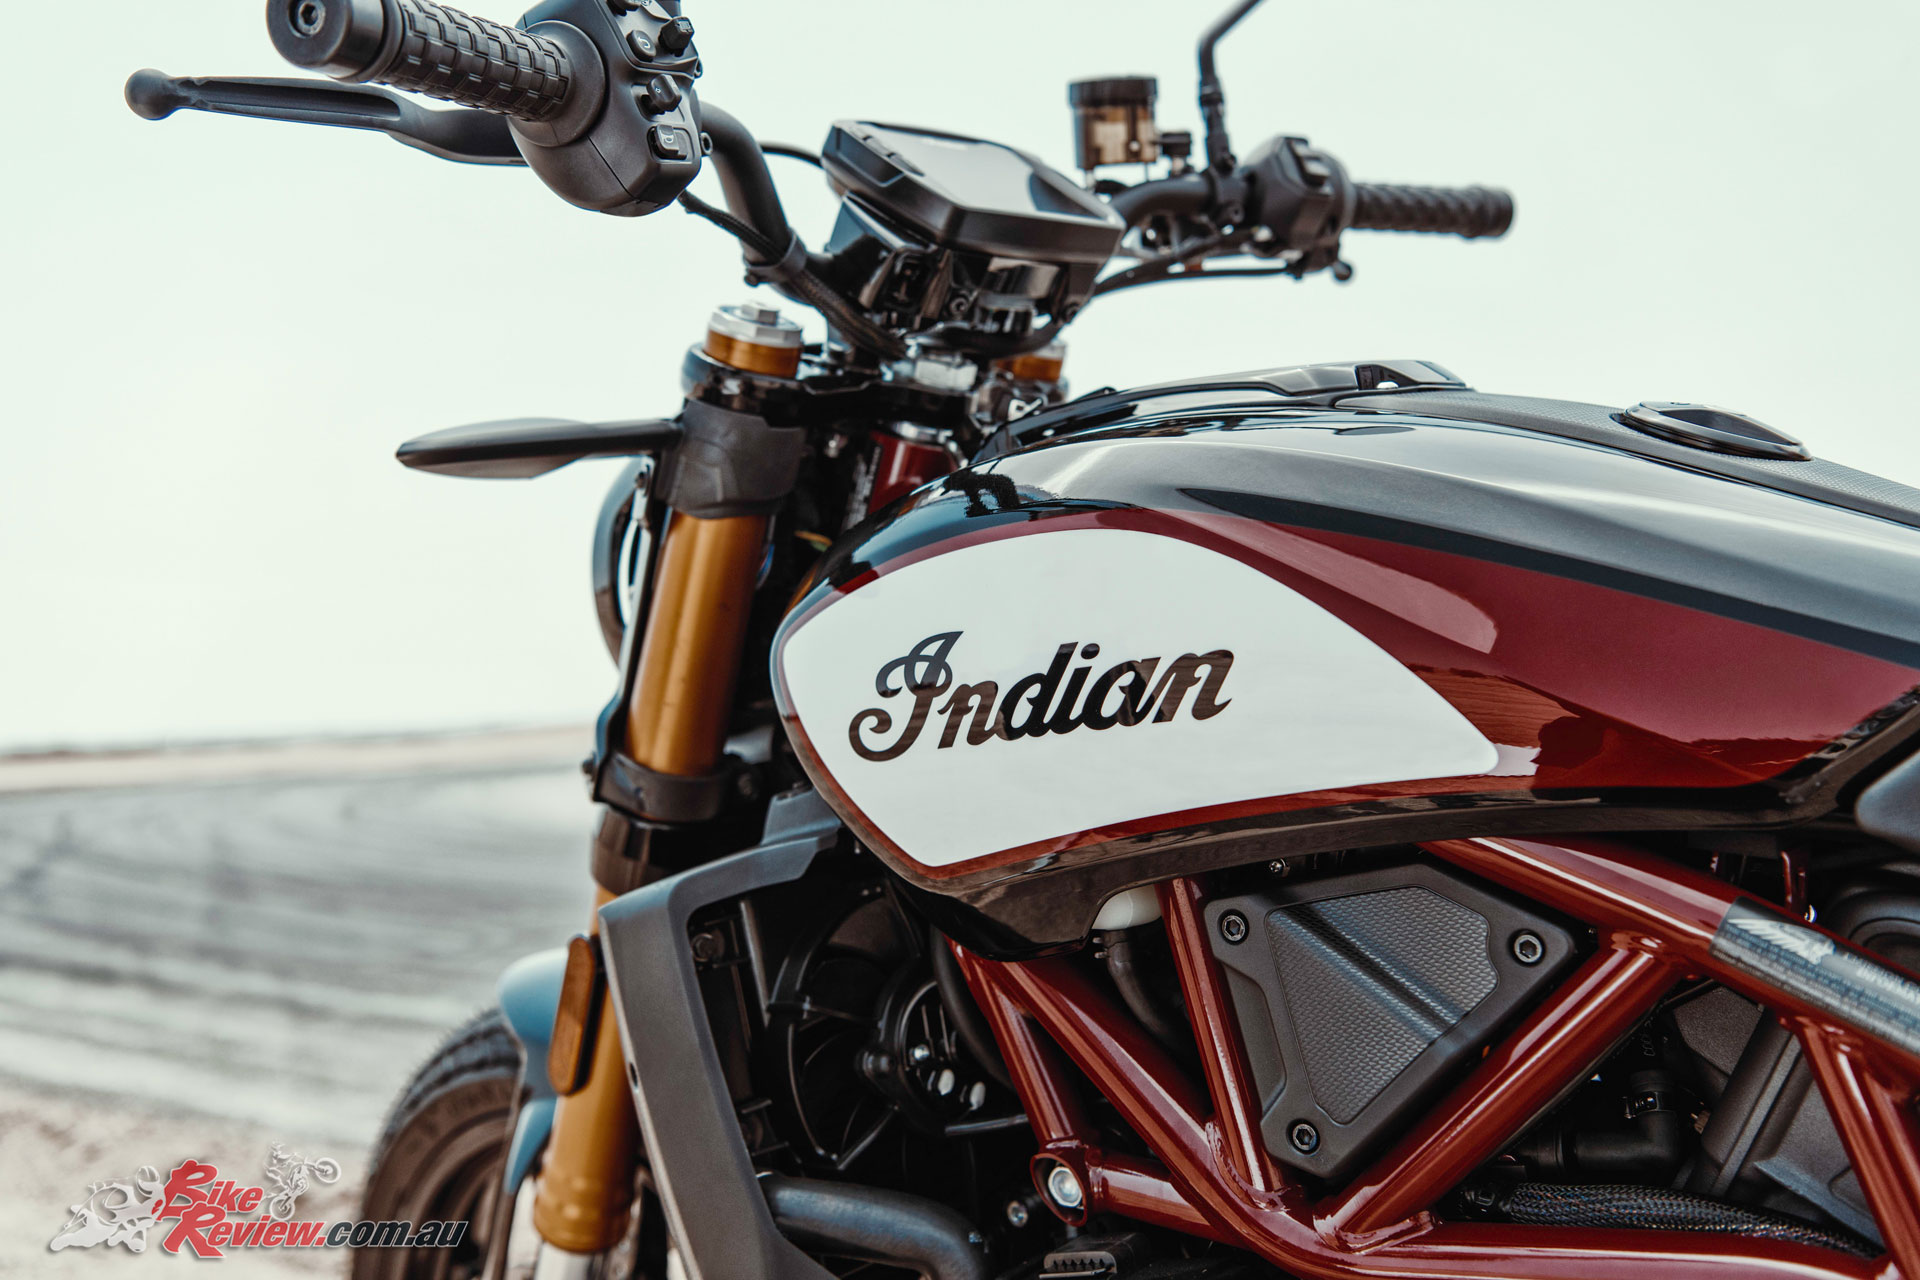 2019-Indian-FTR-1200-S-Bike-Review-518301.jpg